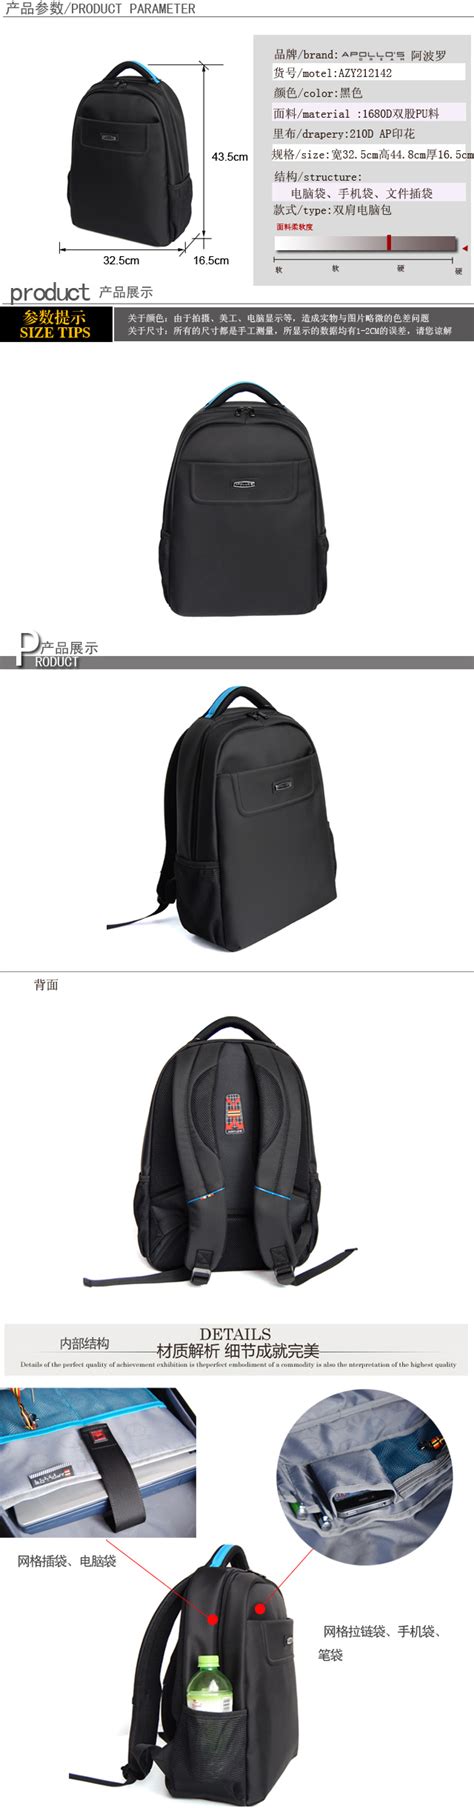 新闻有经验的厂家告诉你背包定制logo怎样做才好 - 日志 - 王丽 - 一家亲生活社区_亲情、友情、爱情一家亲生活社交平台-yijiaqin.com